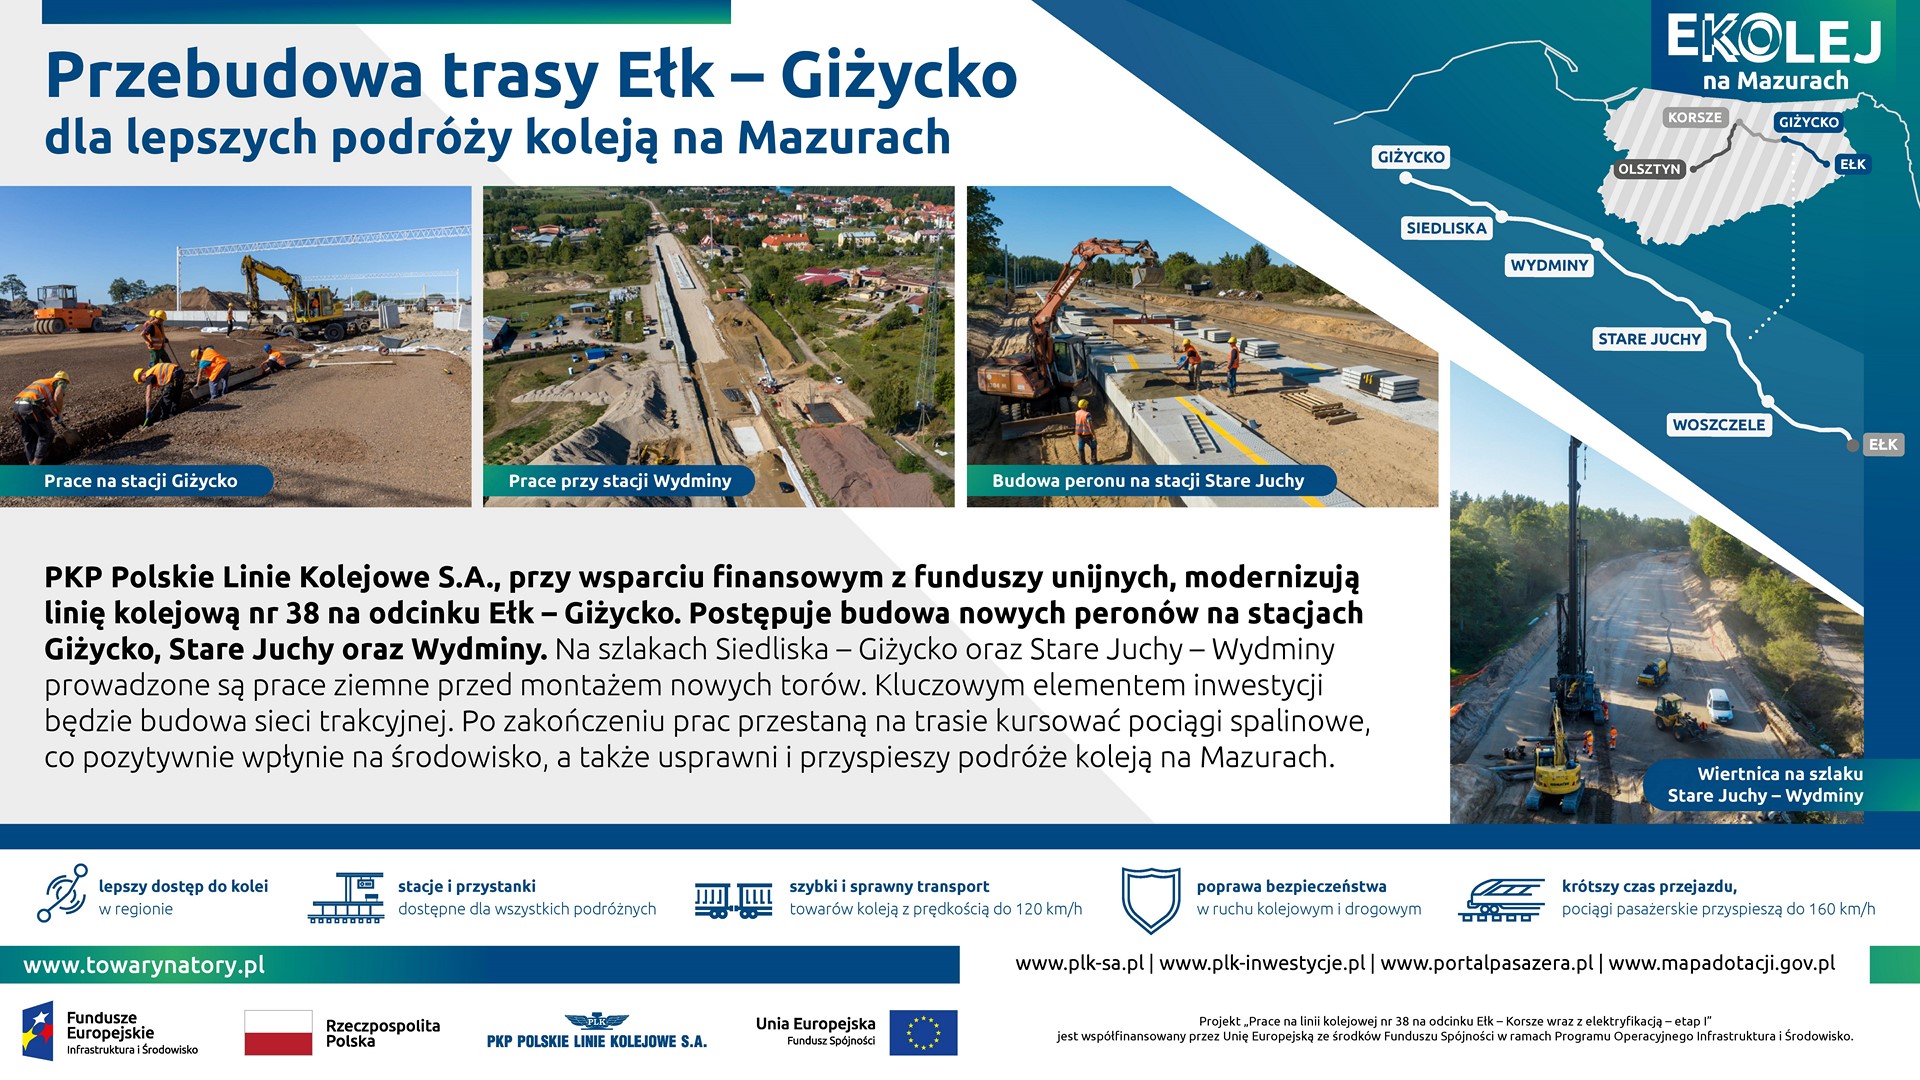 Infografika: przedstawia przebudowę trasy Ełk - Giżycko.